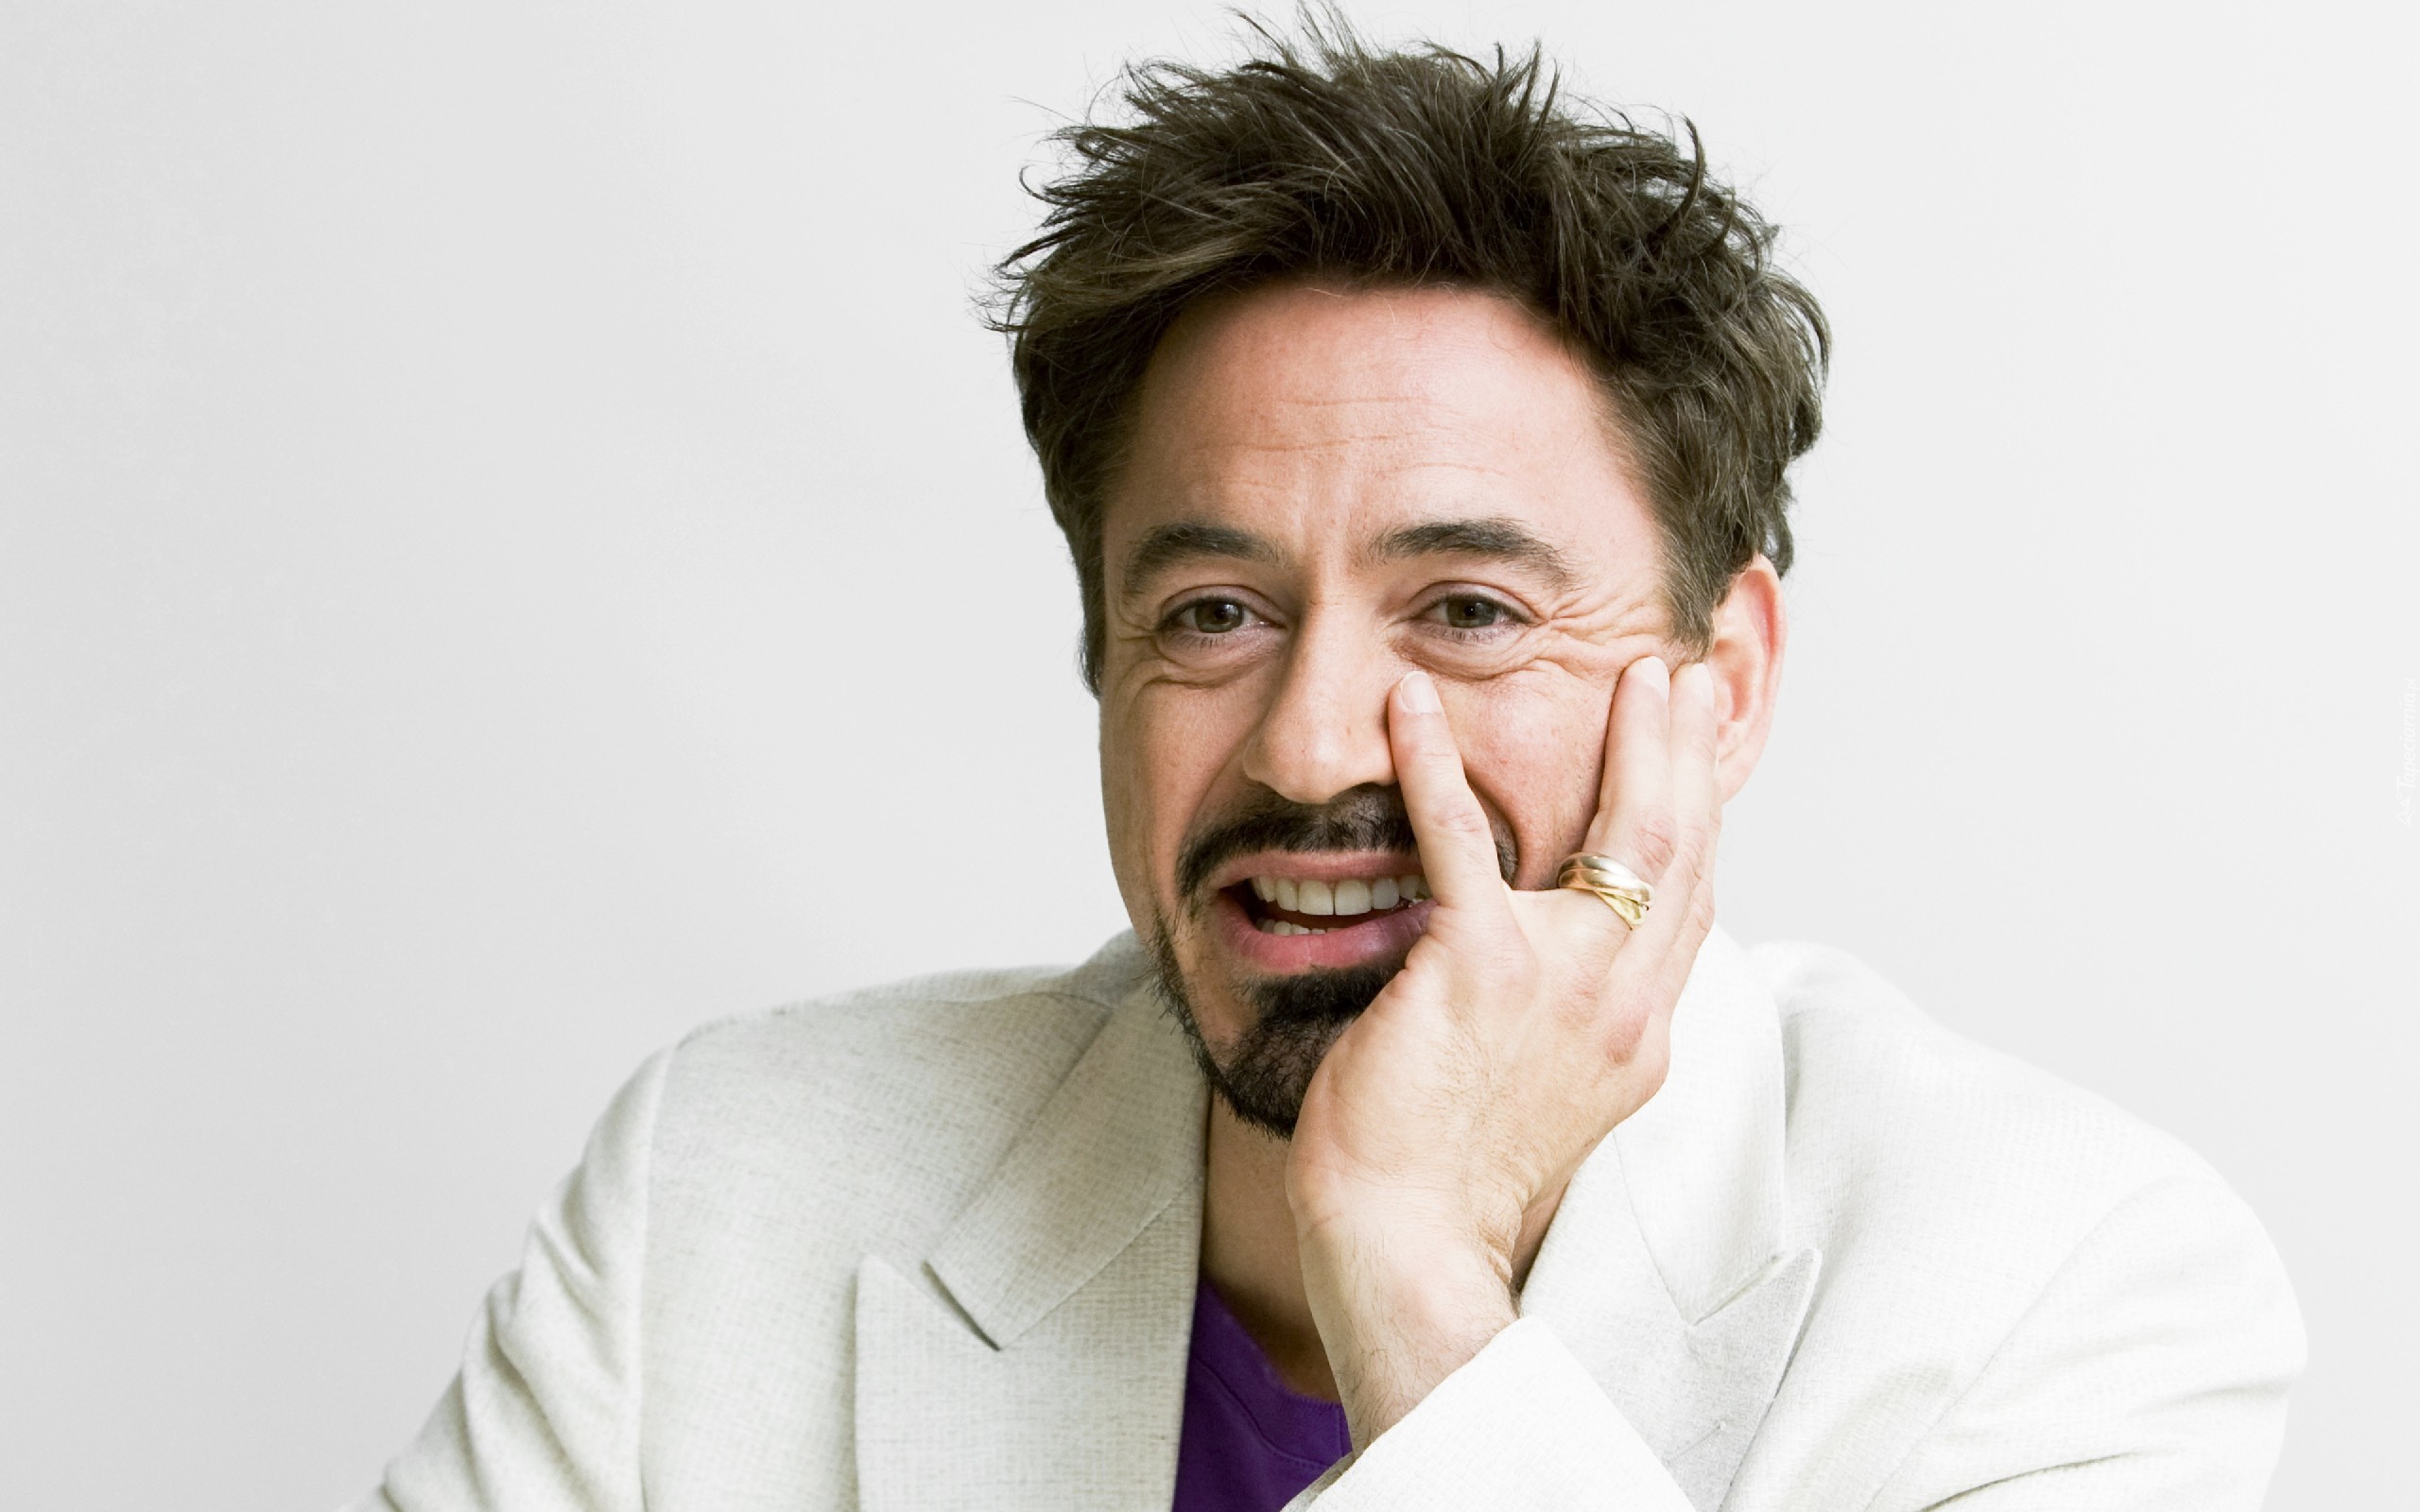 Robert Downey, Jr